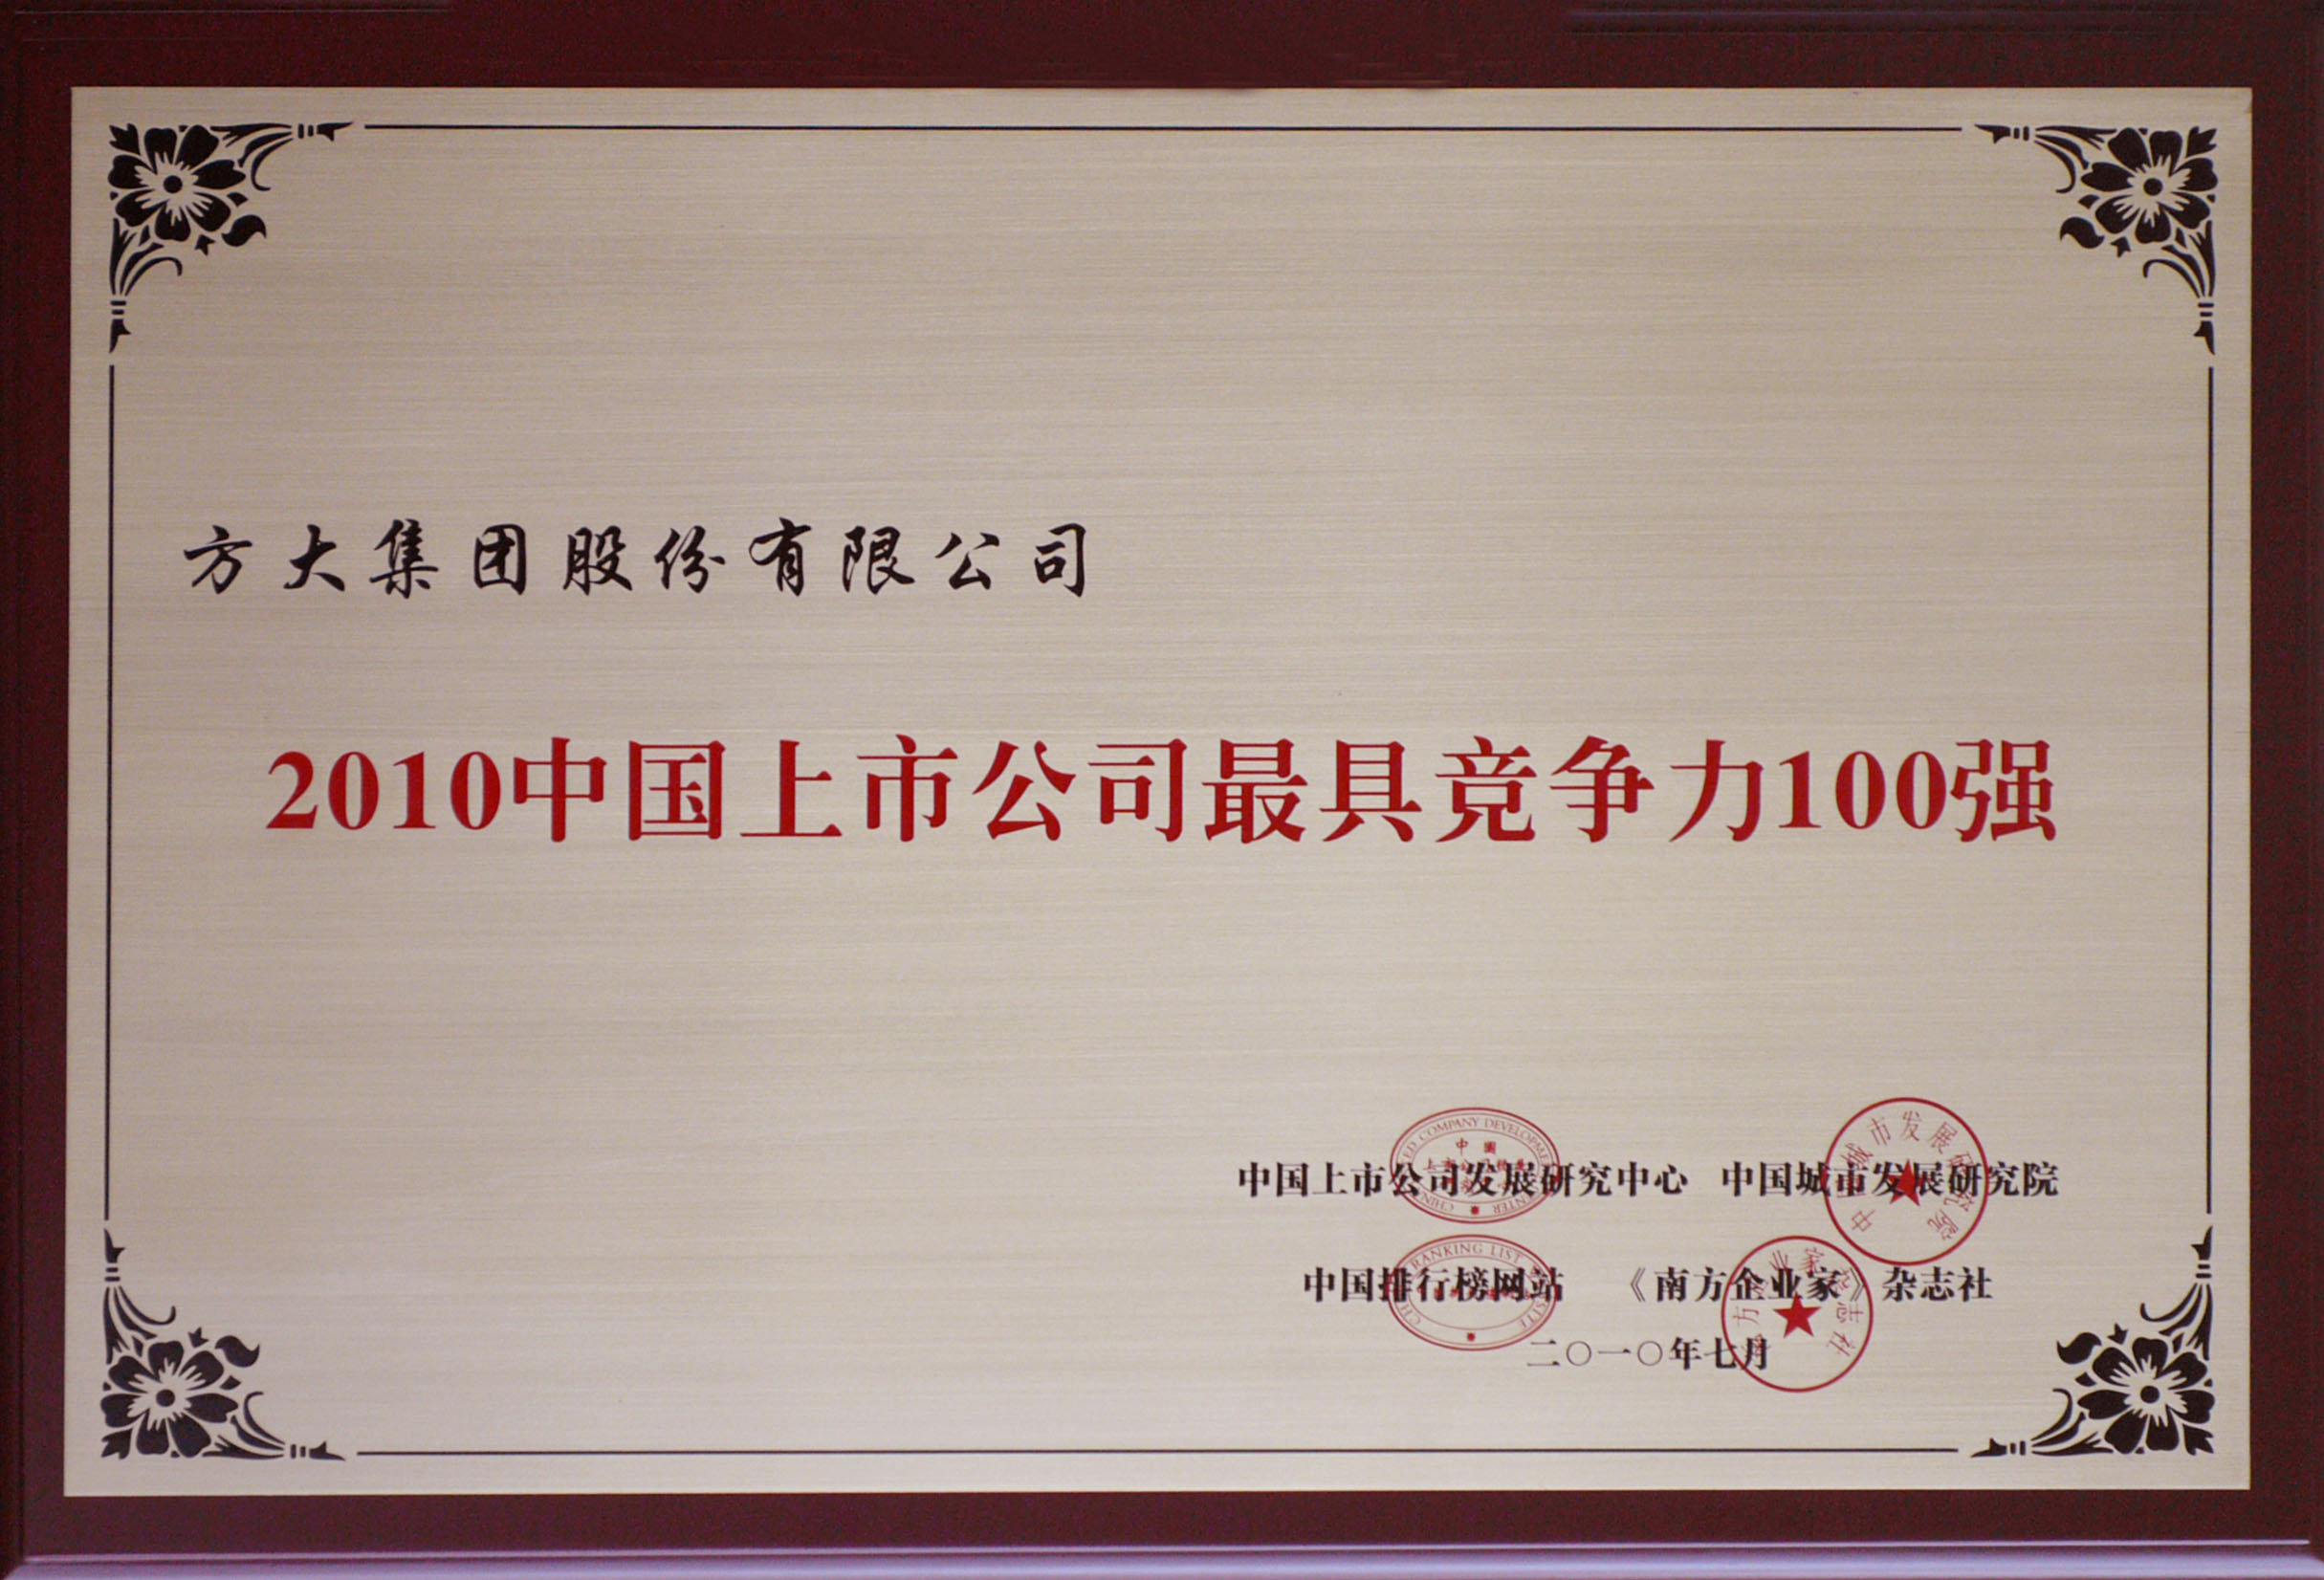 2010 美狮会官网获评“中国上市公司最具竞争力100强”